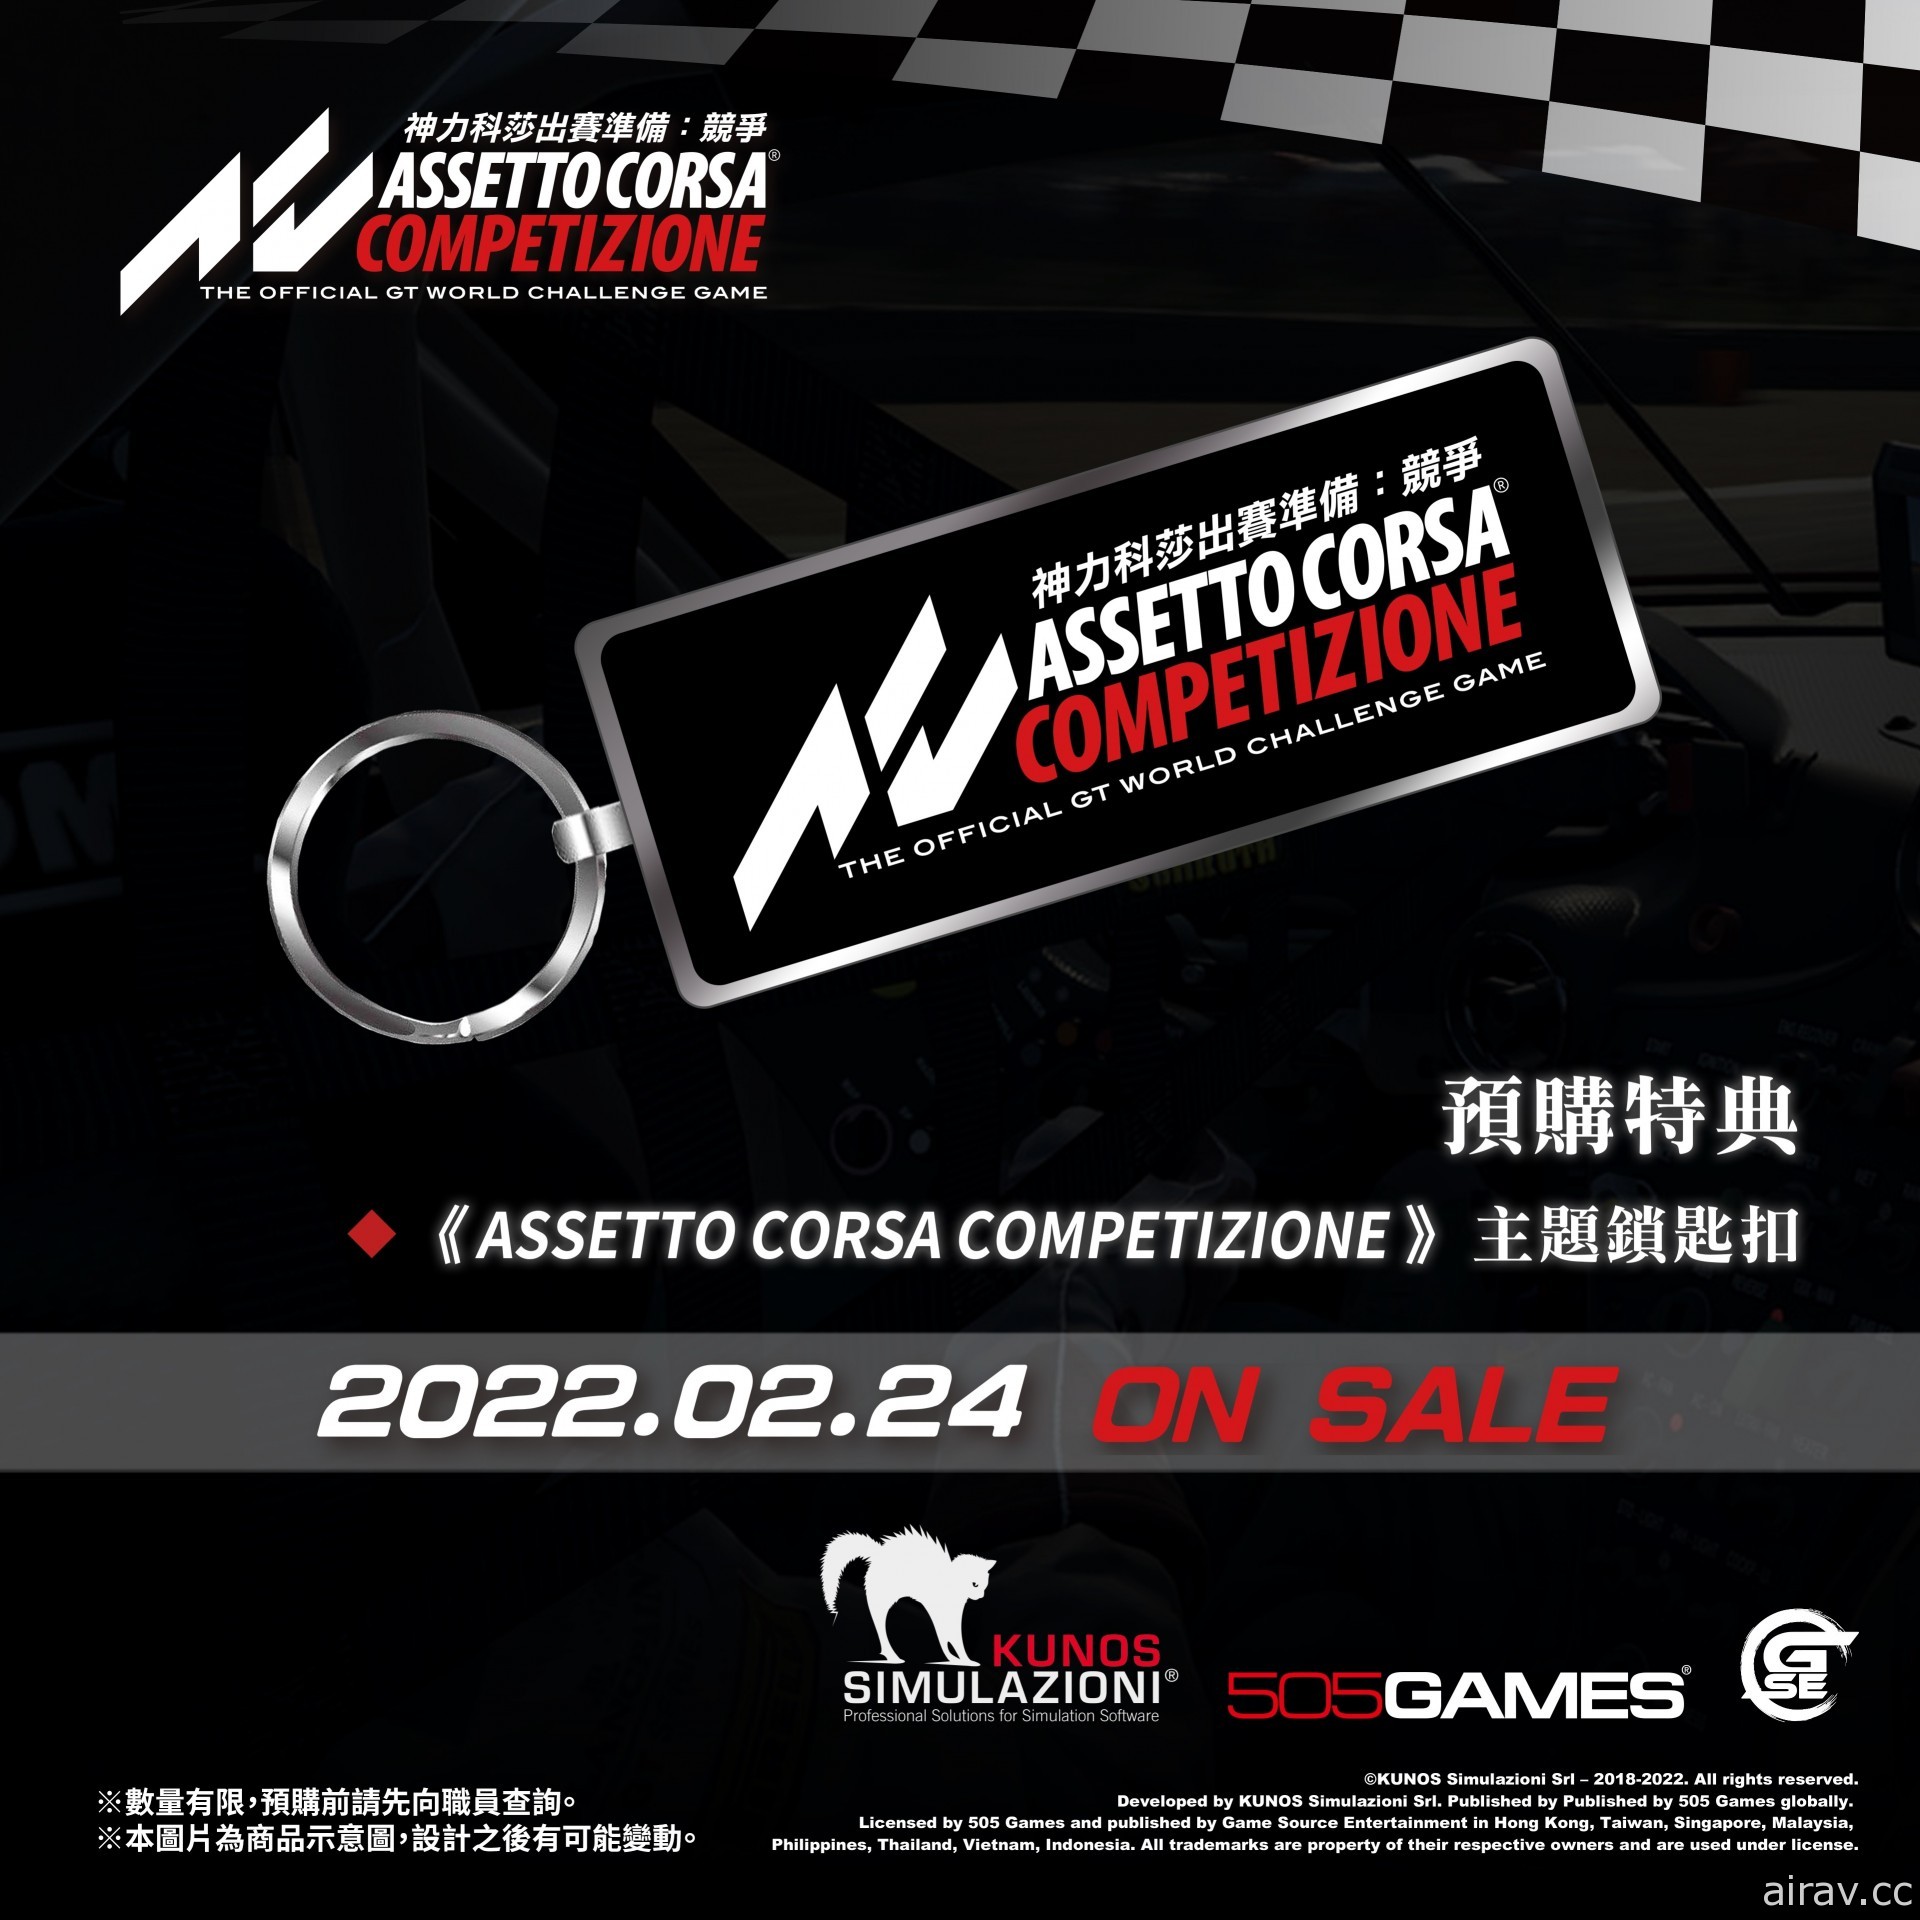 《出賽準備競爭》PS5 版車手招募中 自由挑選專屬愛車迎戰 GT3 賽事